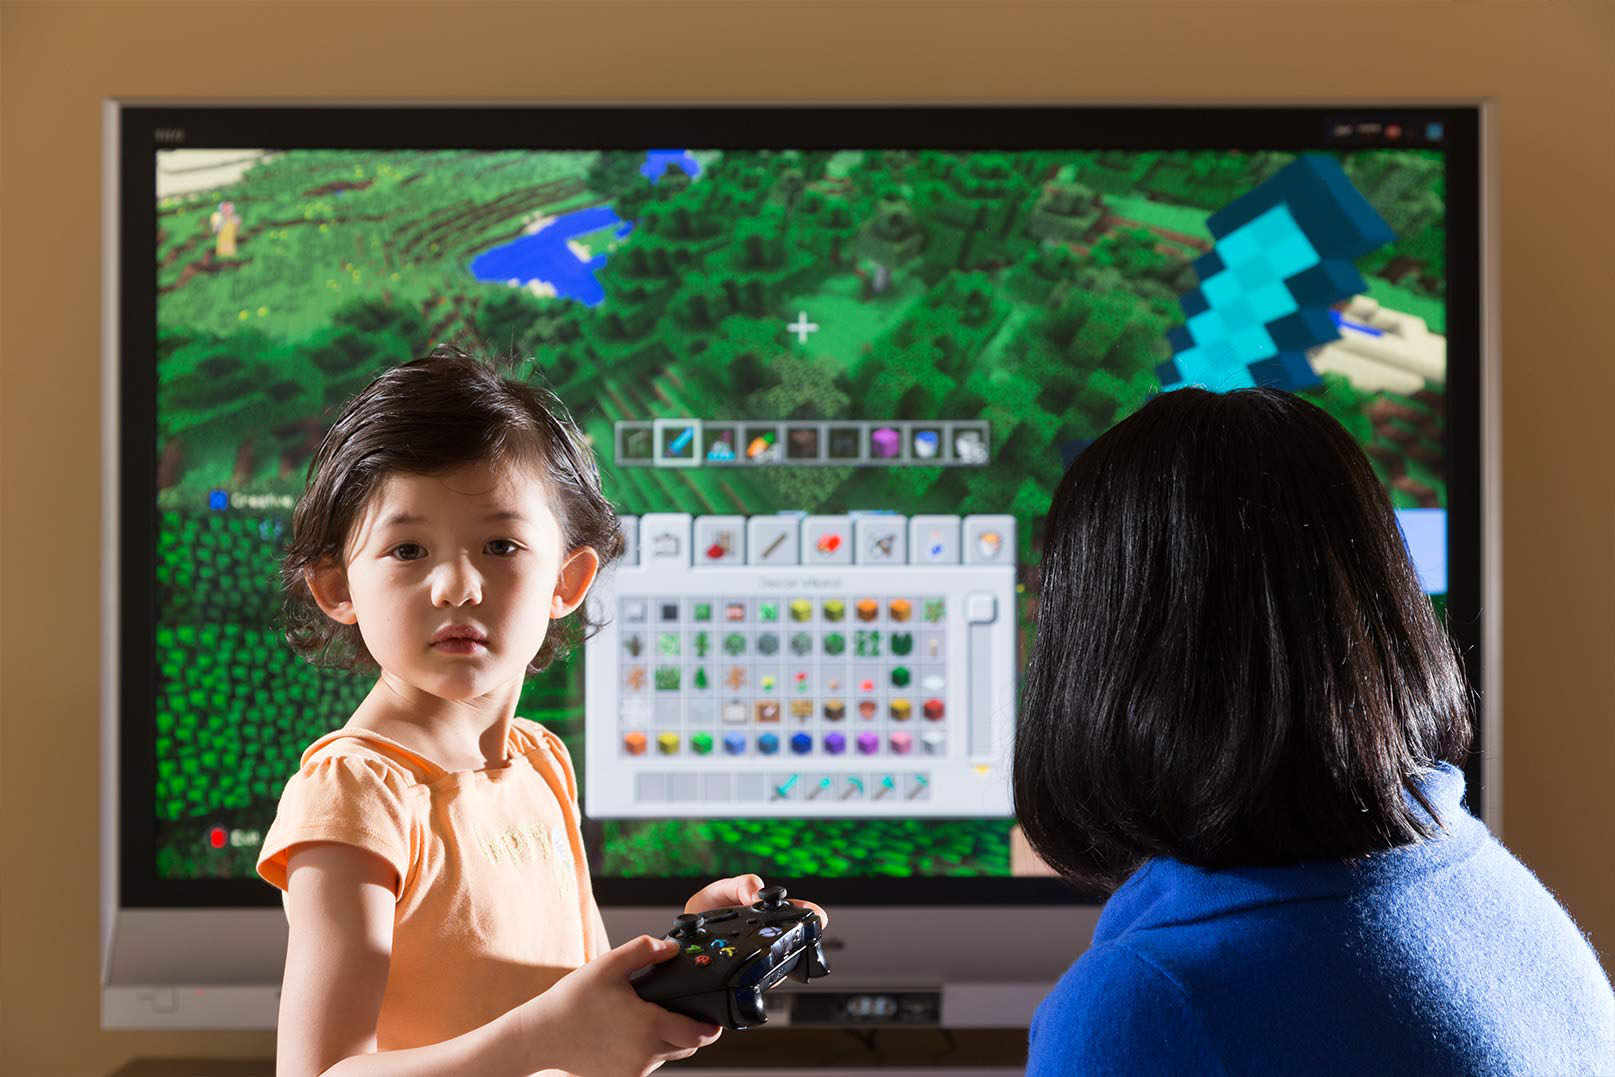 Christina Chen juega “Minecraft” con su hija Natalie – uno de sus pasatiempos compartidos favoritos.